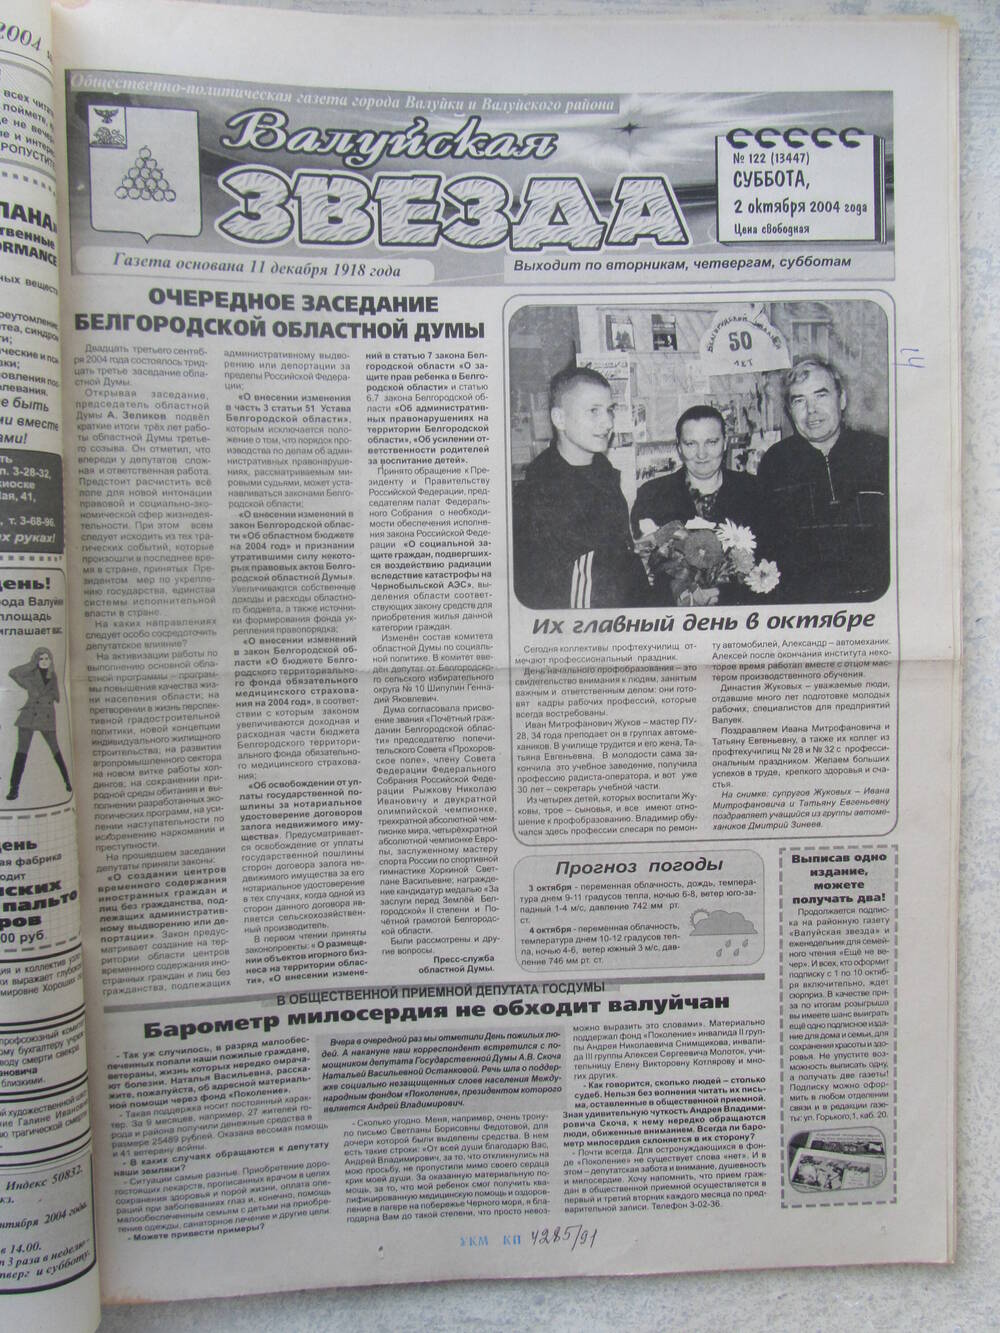 Газета Валуйская звезда №122 от 02.10.2004 г